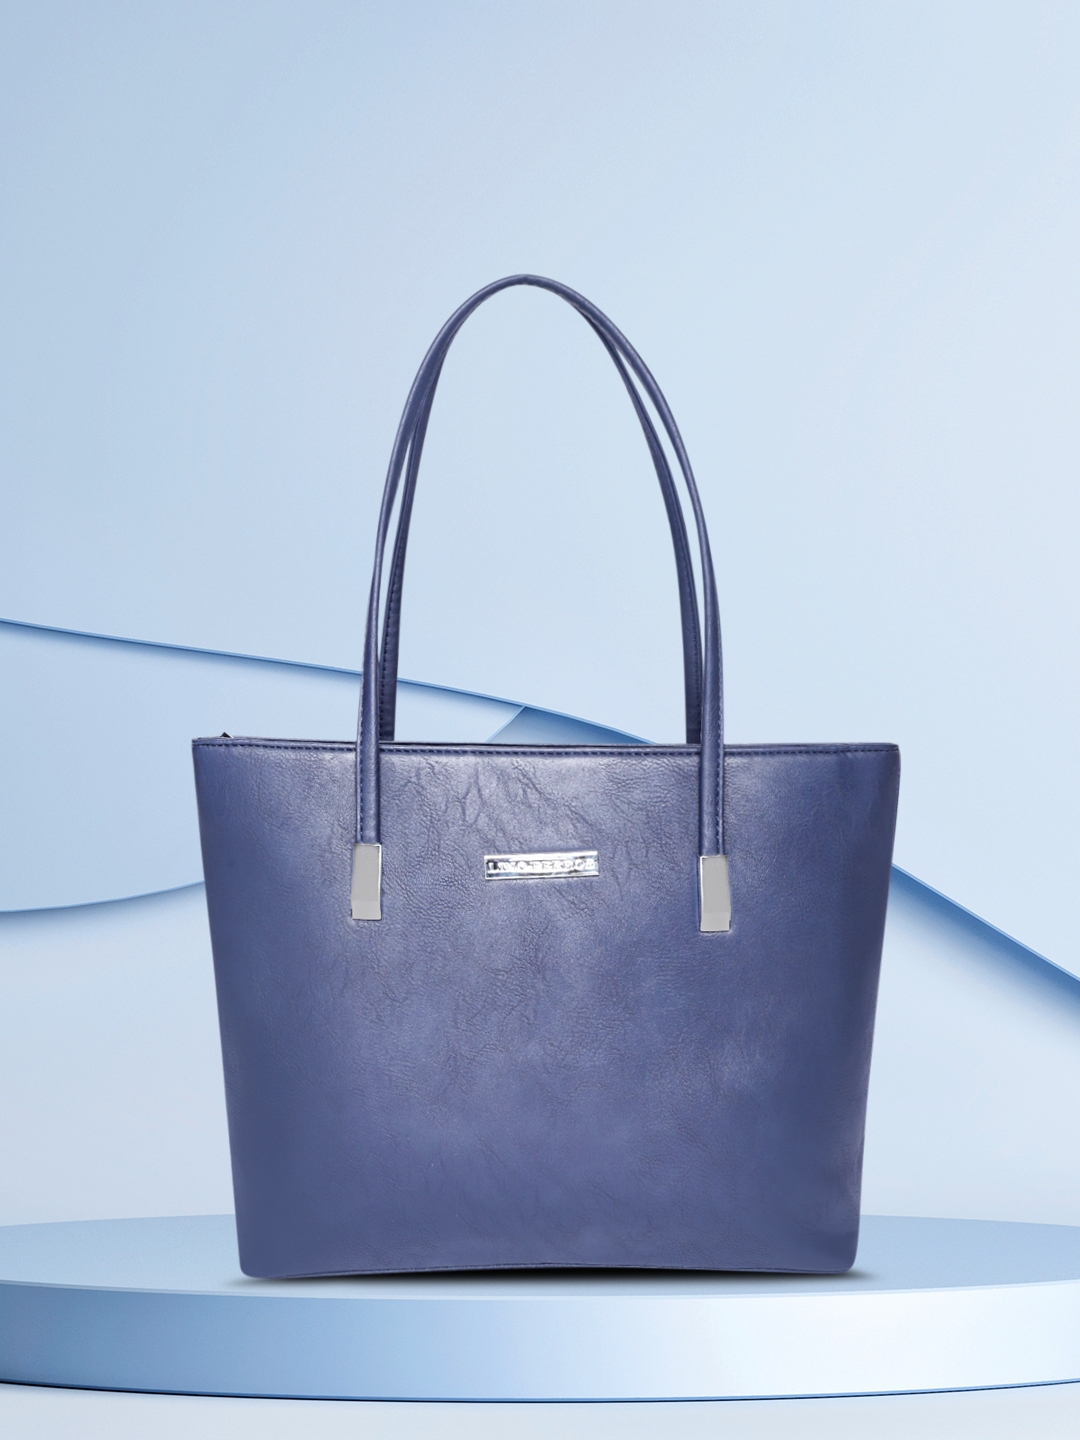 Lino Perros, Bags, Lino Perros Handbag Navy Blue